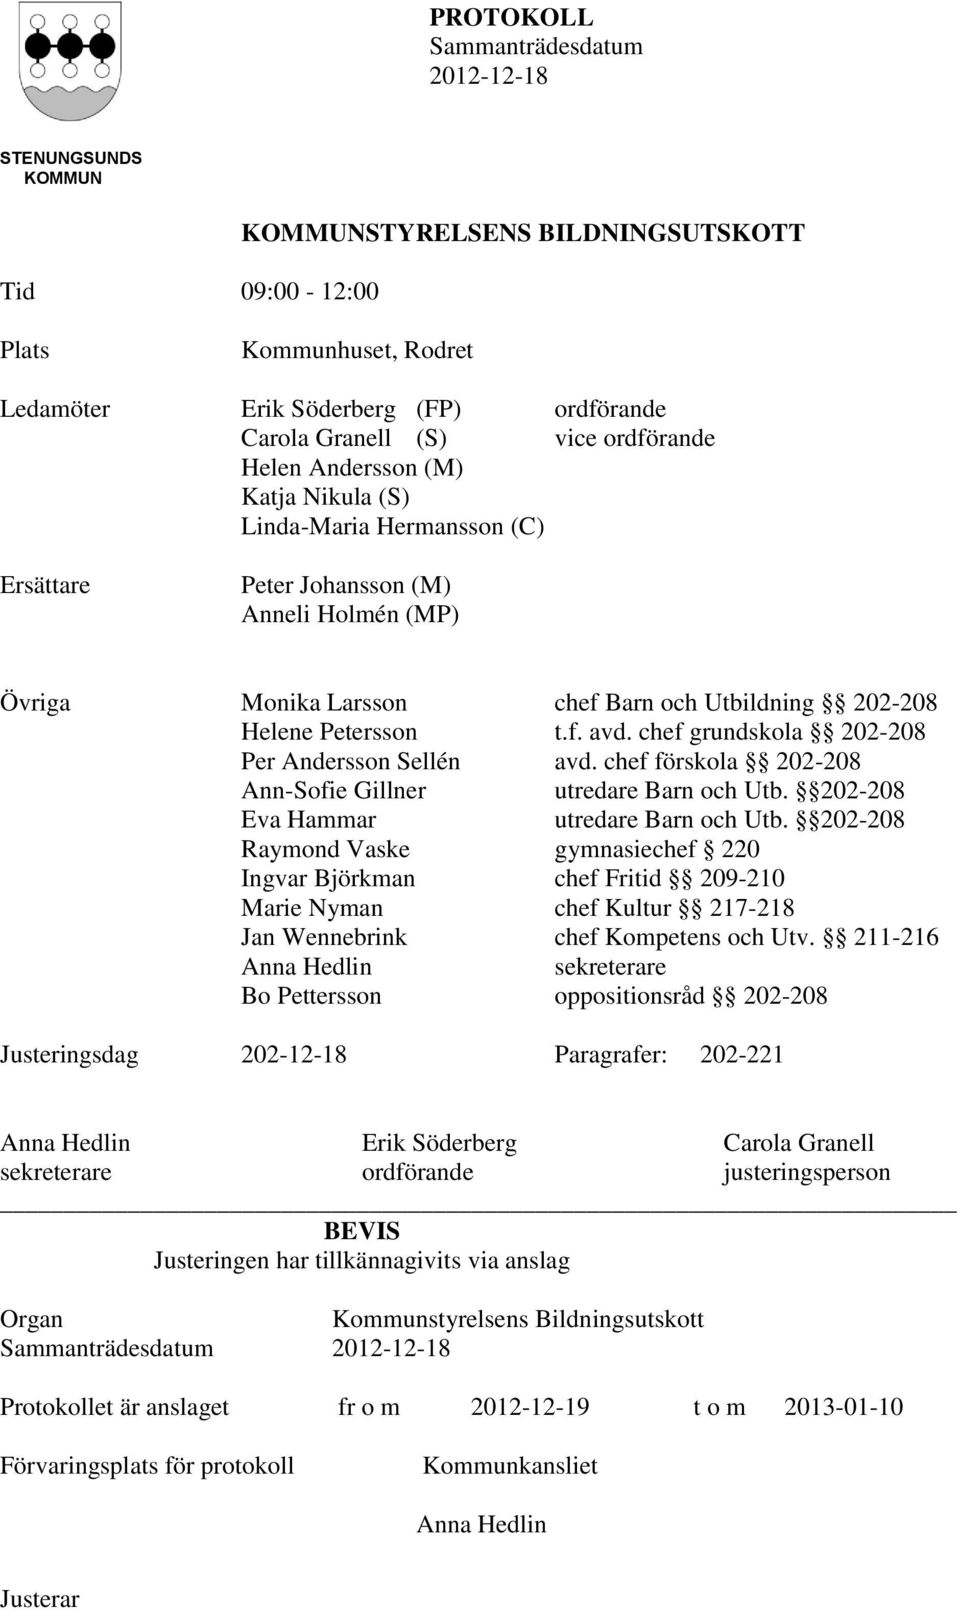 chef grundskola 202-208 Per Andersson Sellén avd. chef förskola 202-208 Ann-Sofie Gillner utredare Barn och Utb. 202-208 Eva Hammar utredare Barn och Utb.